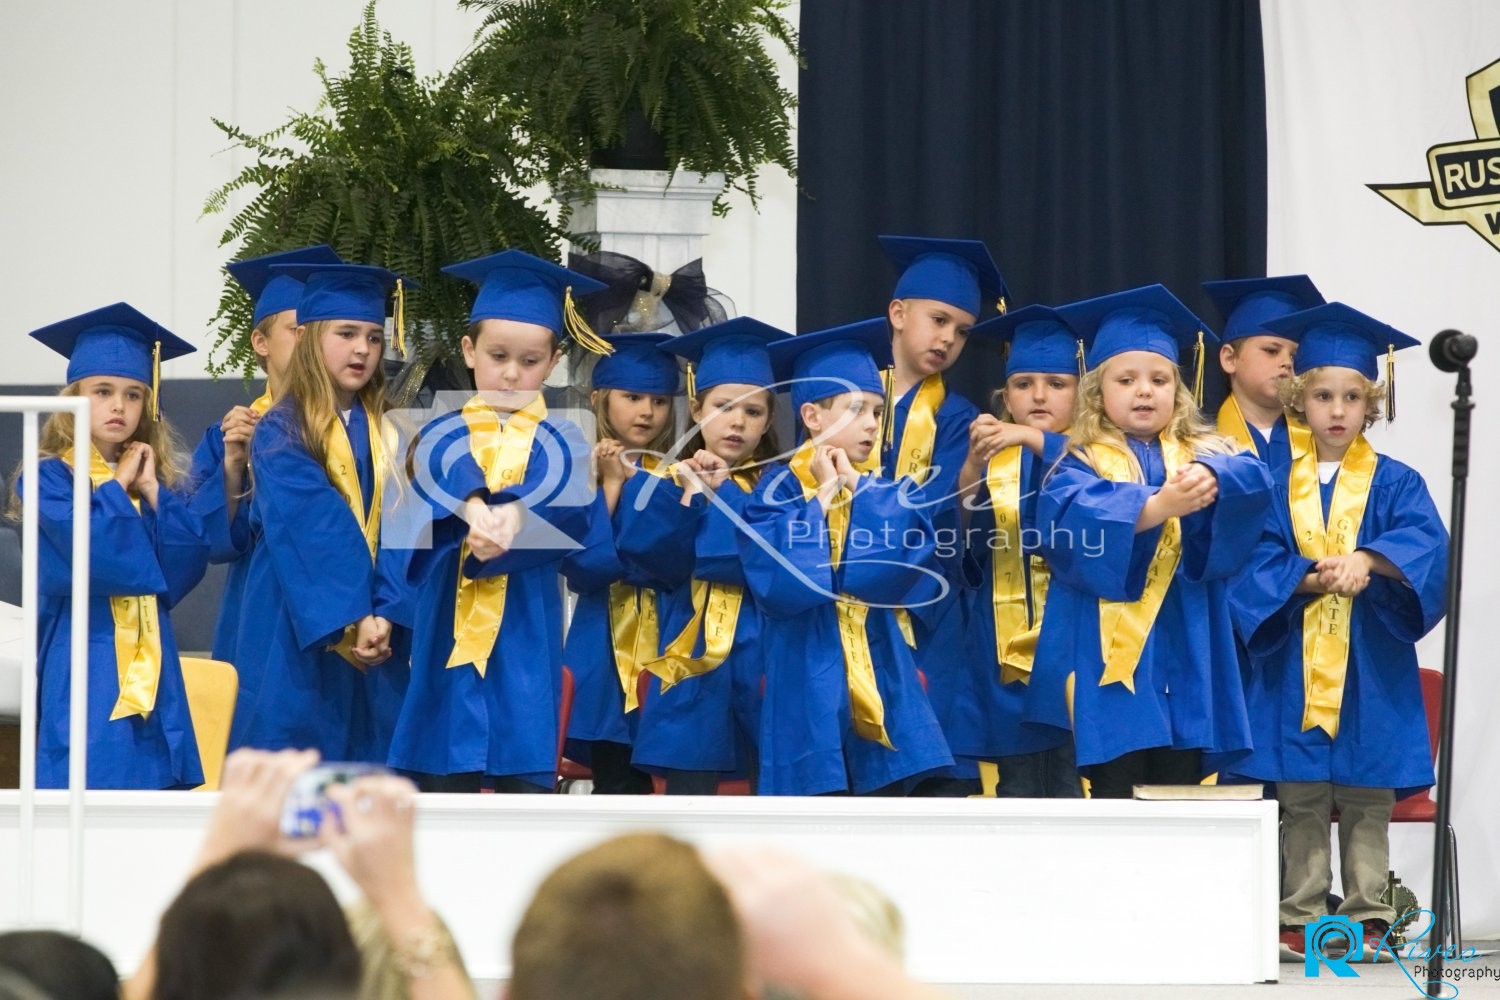 Russell Christian Academy Kindergarten Graduation 